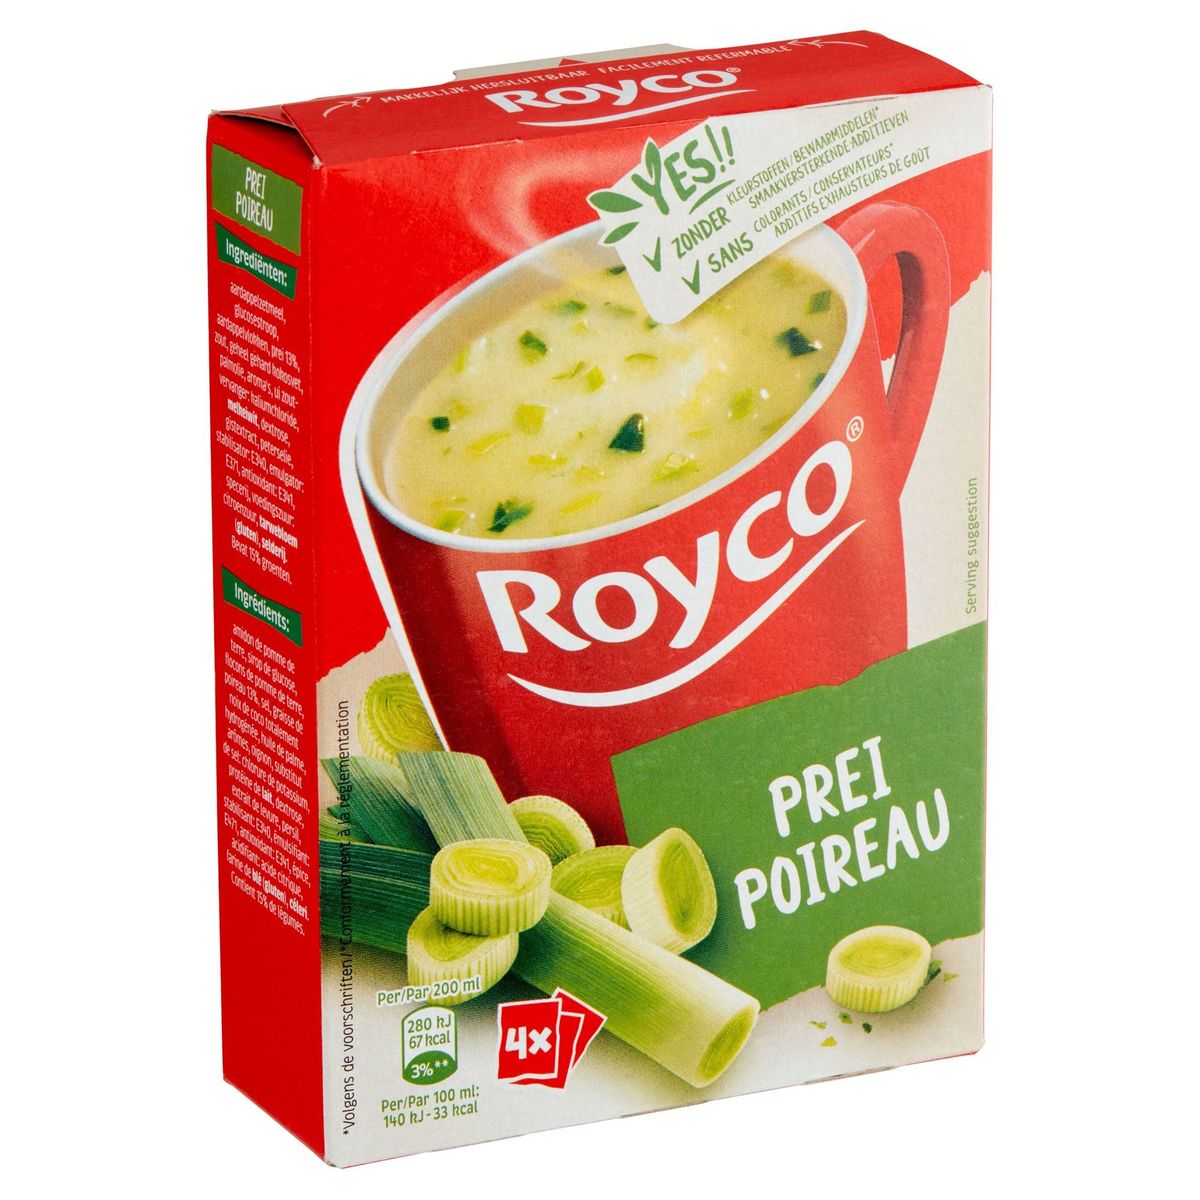 Royco Poireaux 4 x 16.4 g